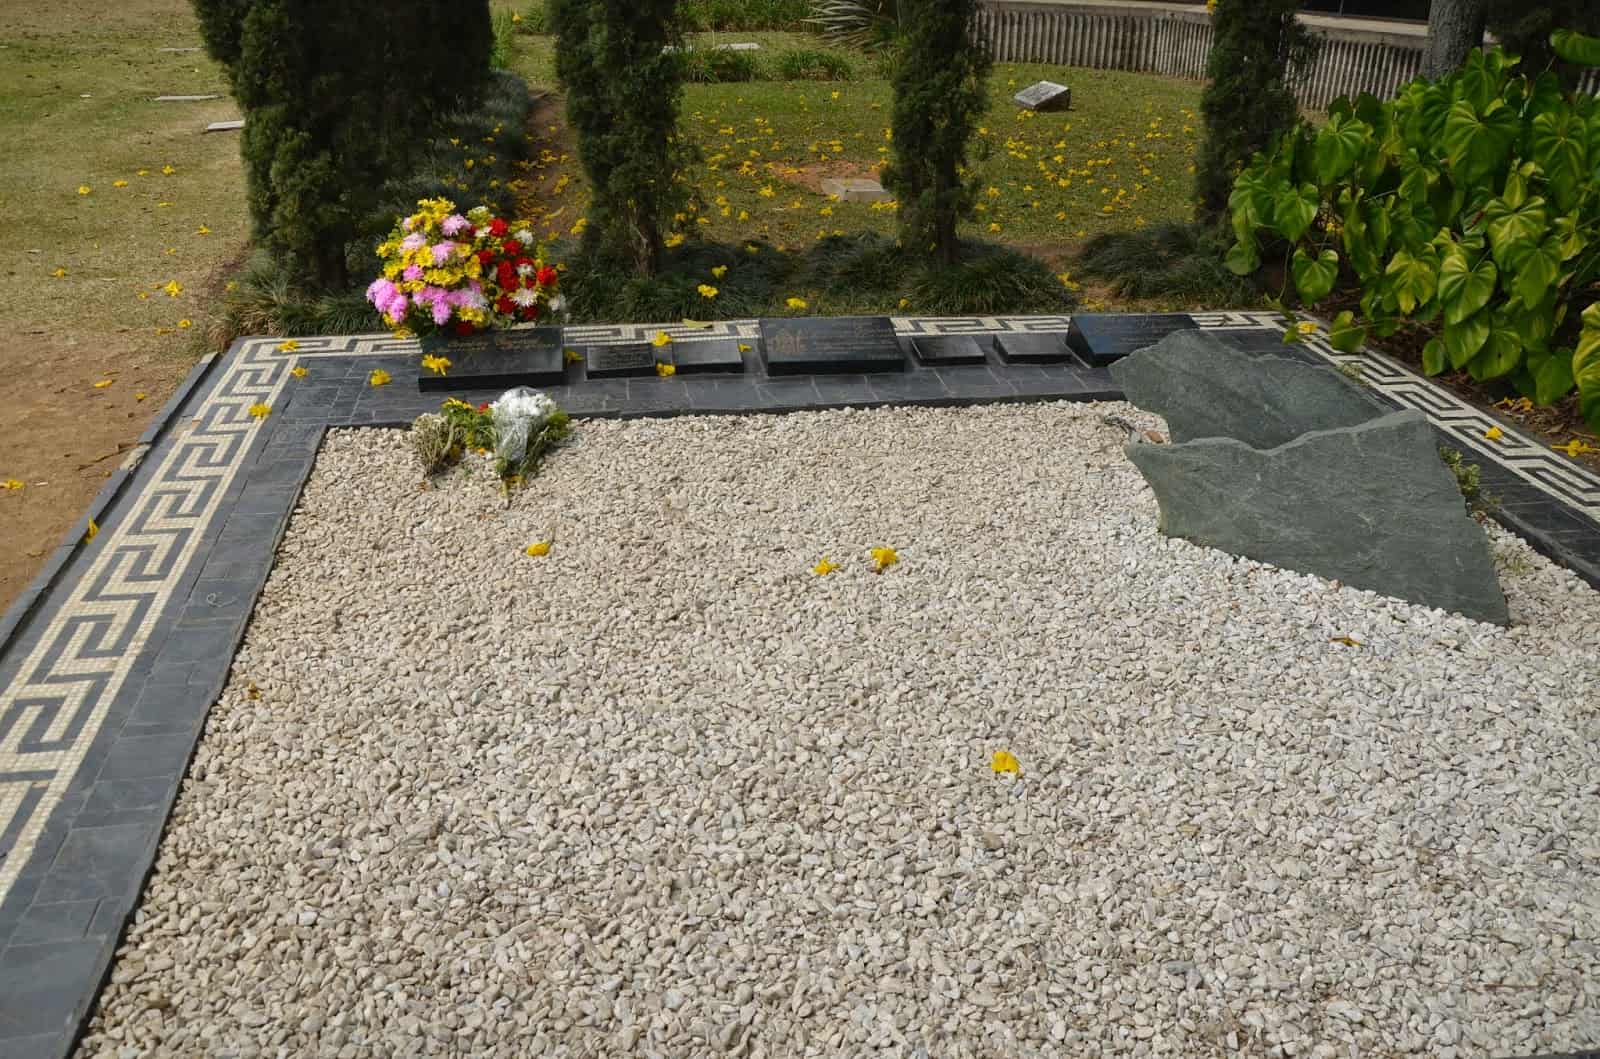 Pablo Escobar’s grave on the Pablo Escobar tour at Montesacro Gardens Cemetery in Itagüí, Antioquia, Colombia